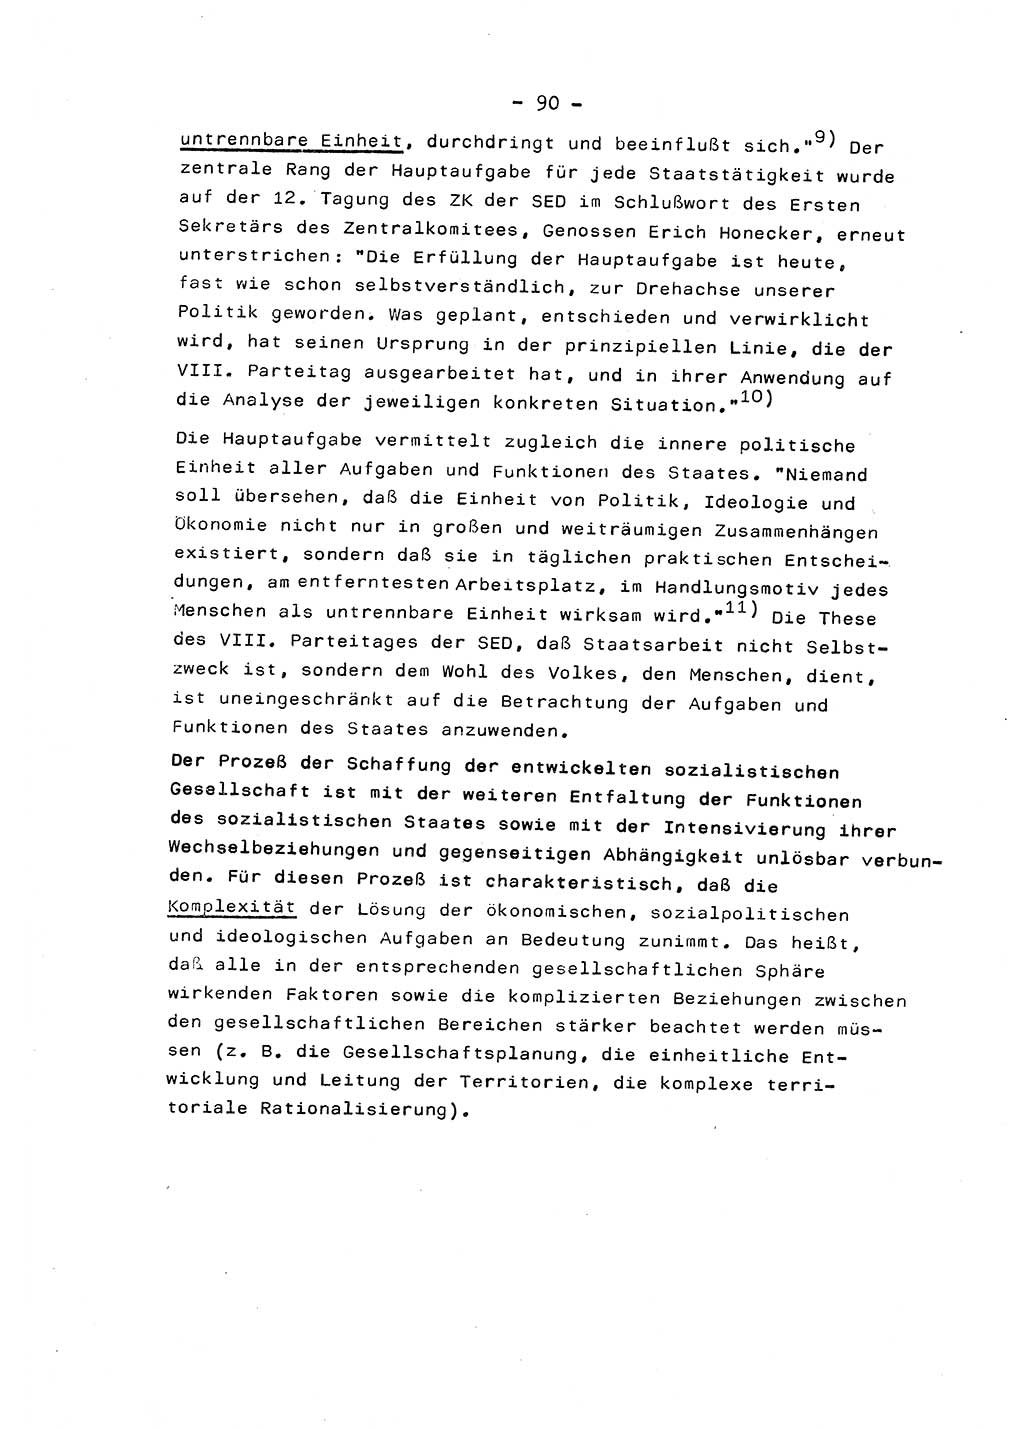 Marxistisch-leninistische Staats- und Rechtstheorie [Deutsche Demokratische Republik (DDR)] 1975, Seite 90 (ML St.-R.-Th. DDR 1975, S. 90)